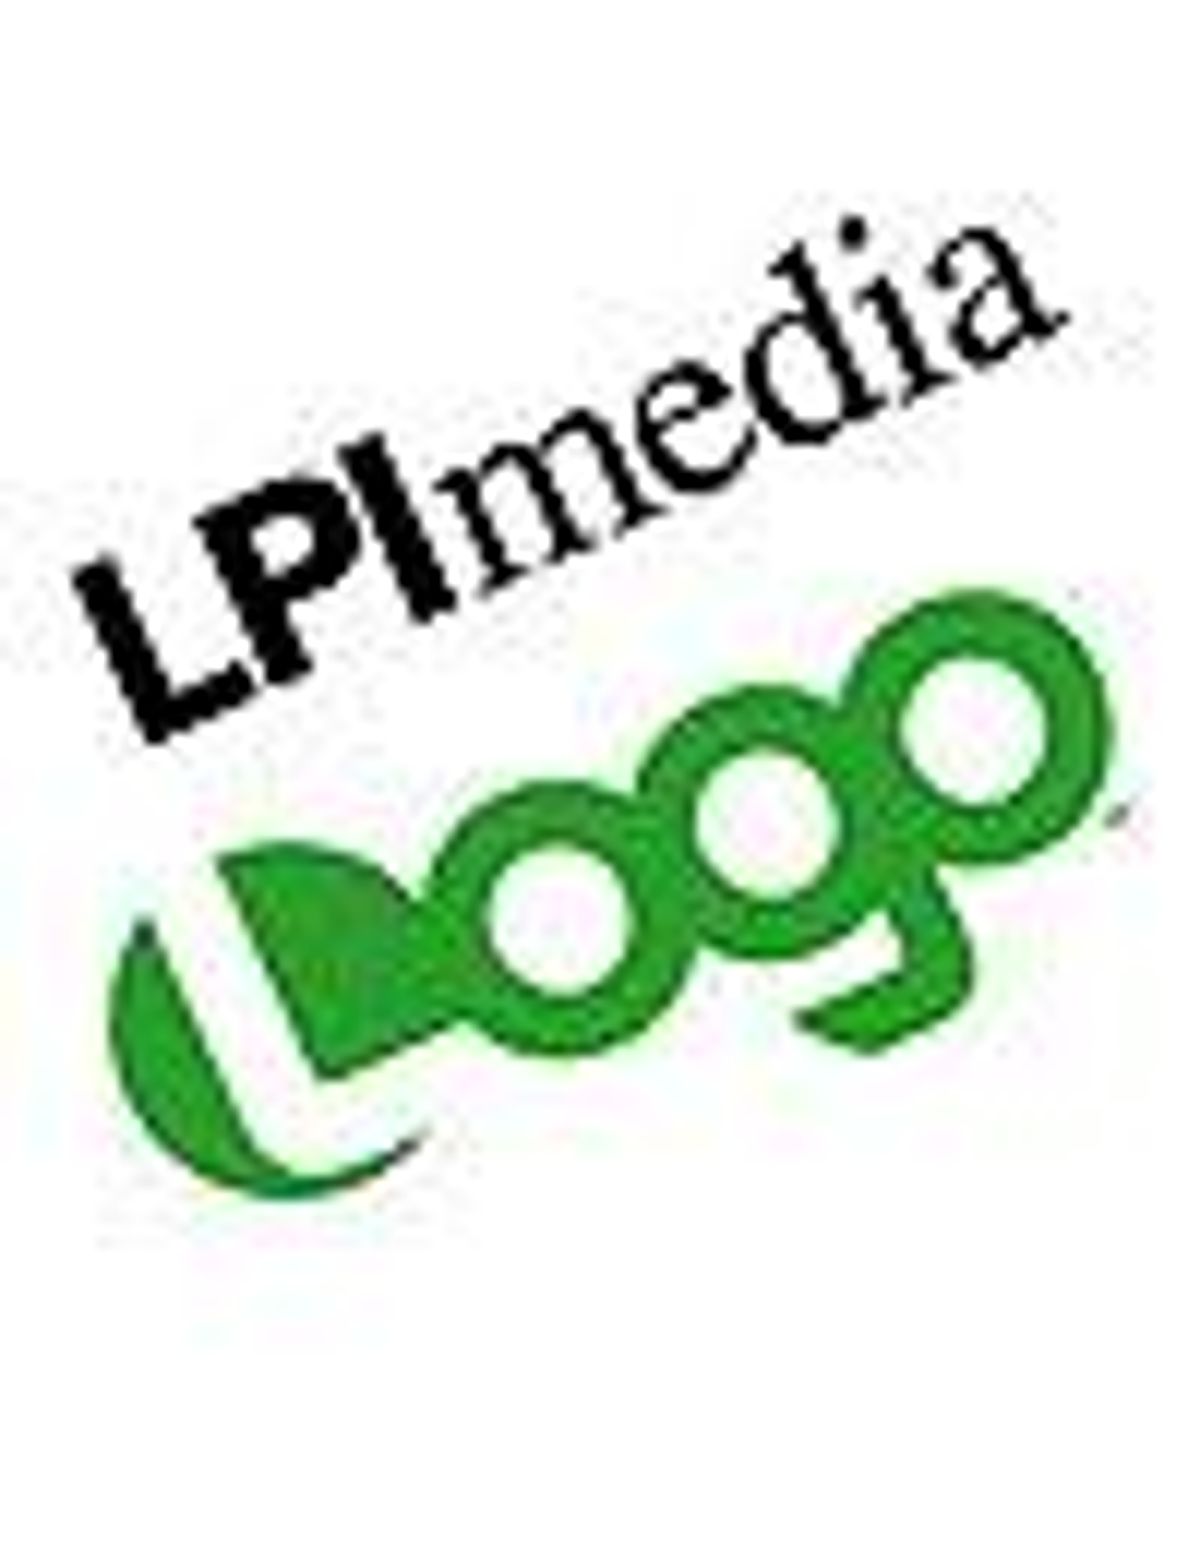 Lpi_and_logo_large